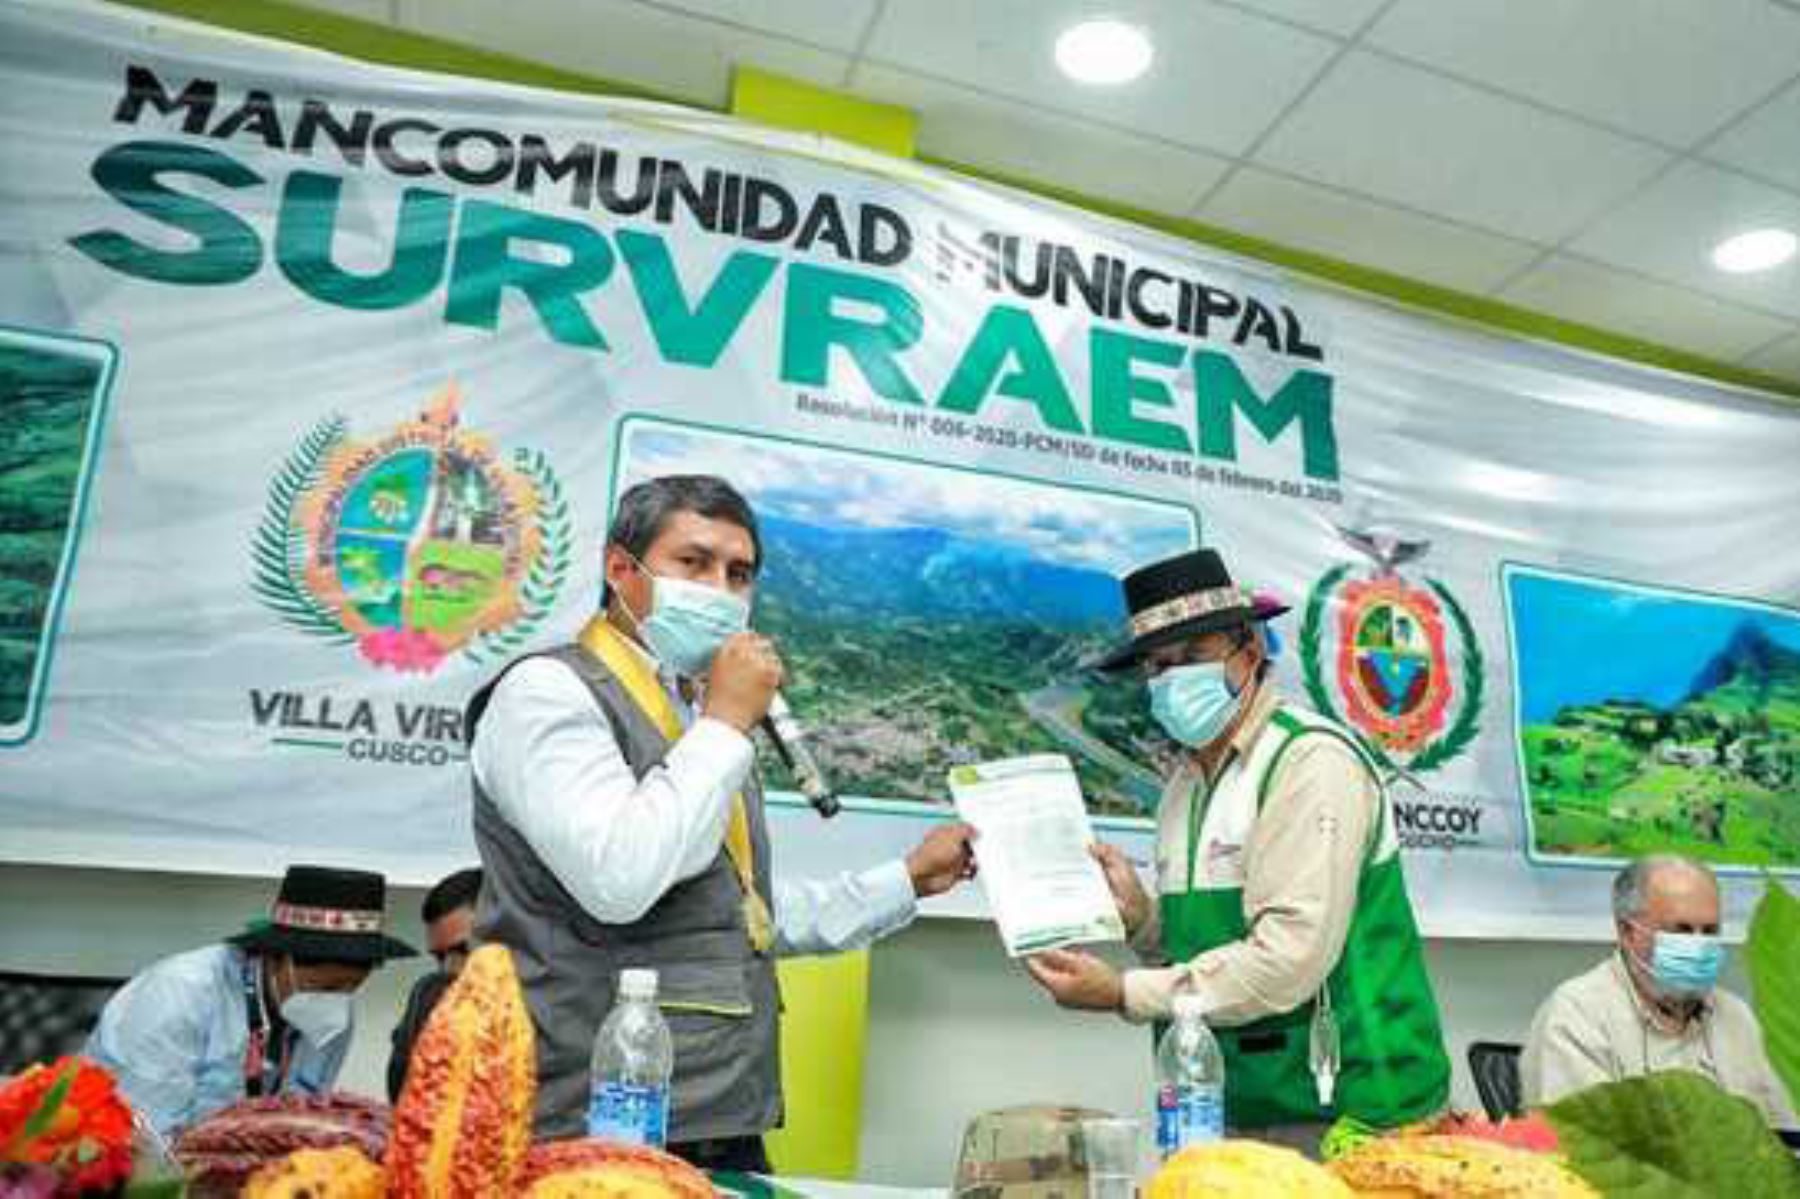 La propuesta de pacto social ciudadano tiene por finalidad reducir el cultivo de hoja de coca de manera voluntaria. Foto: ANDINA/Difusión